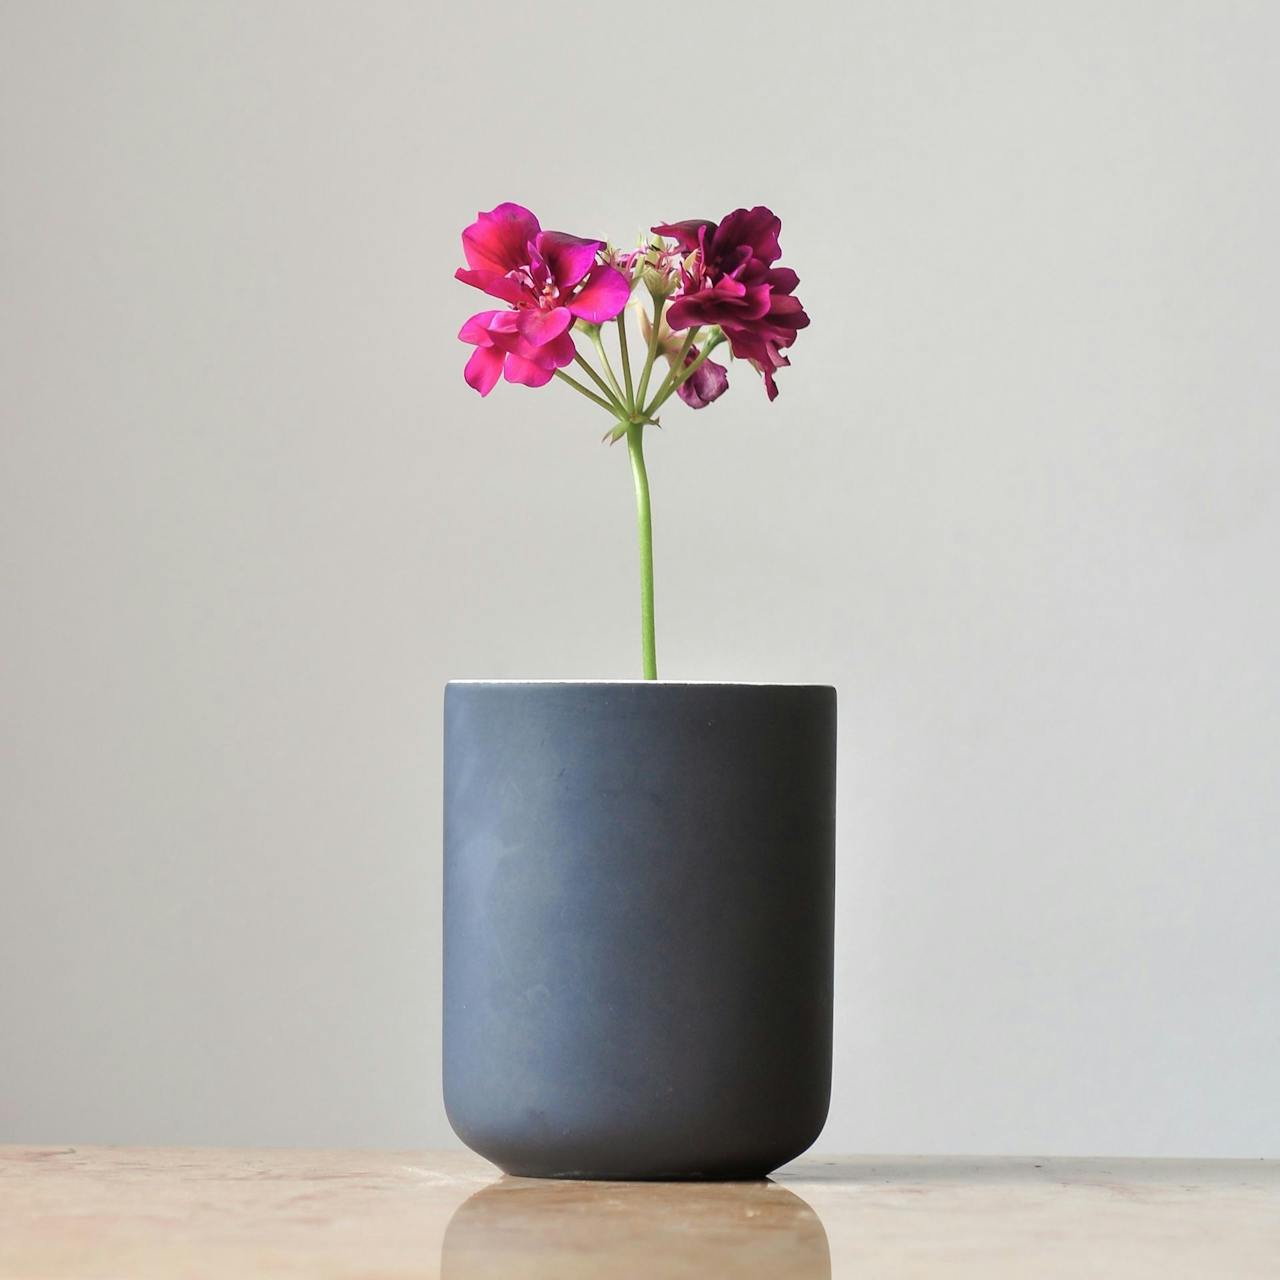 Diese Vase ist wunderschön durch pure Einfachheit.